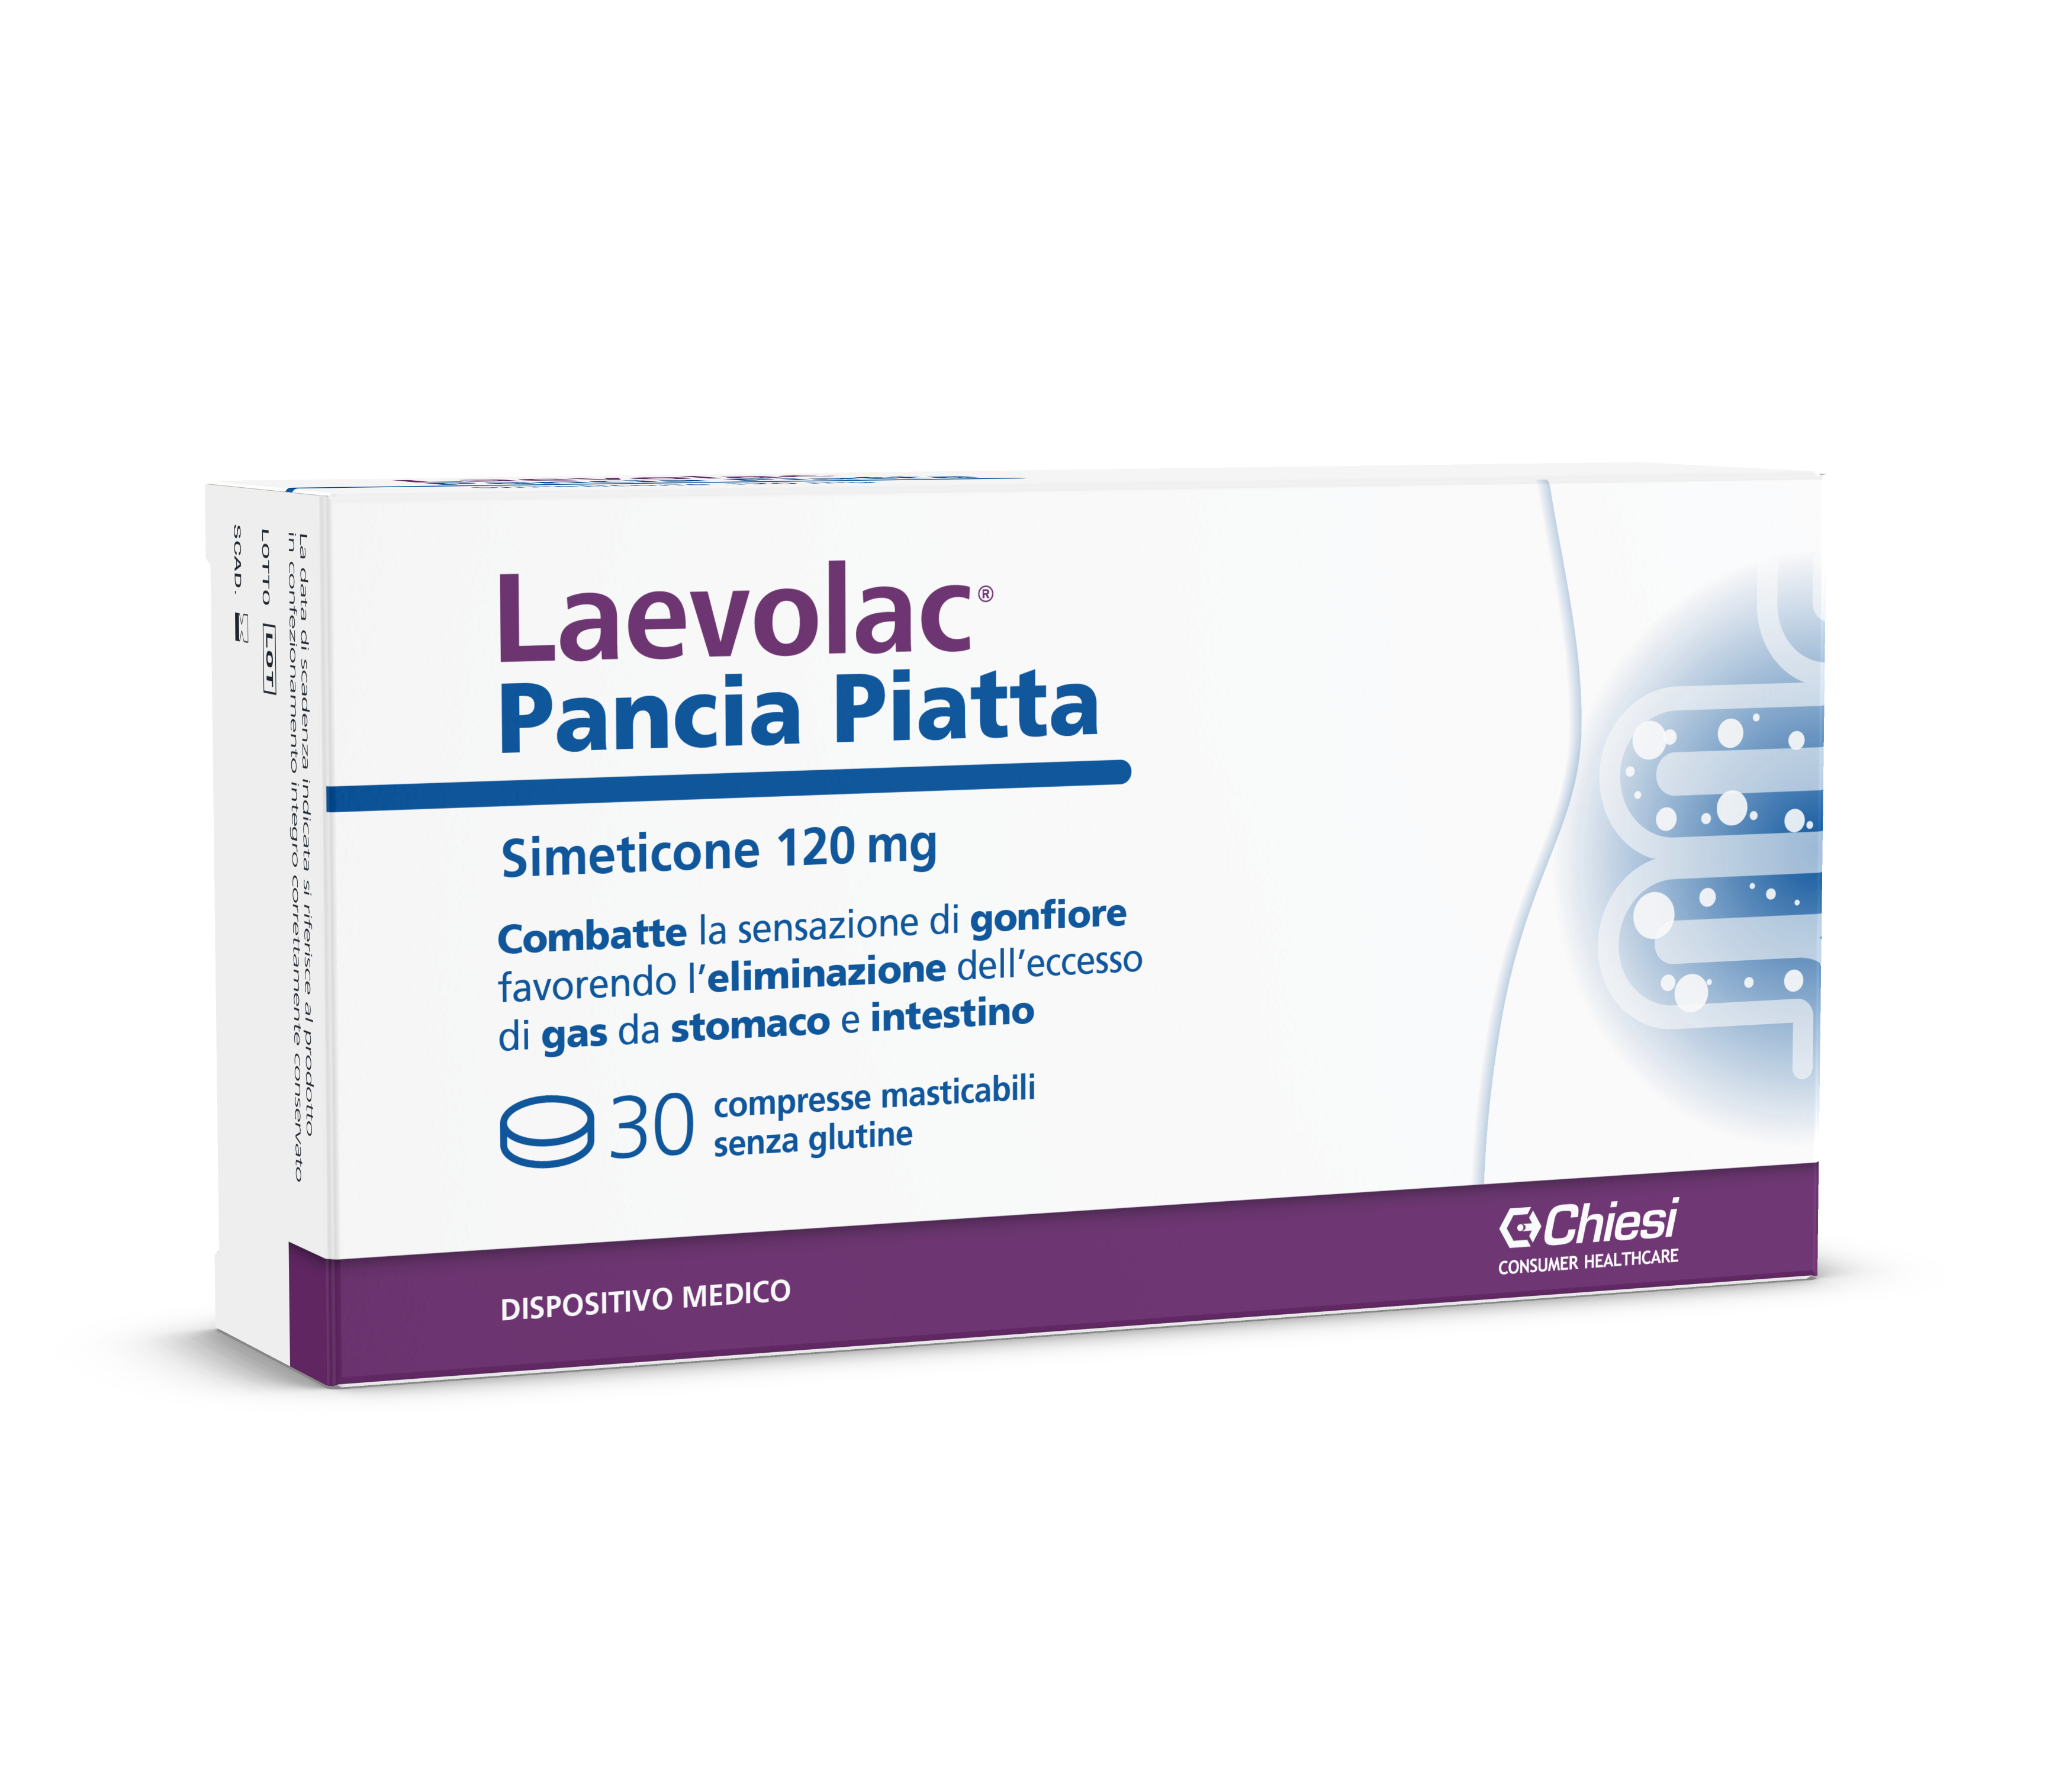 Immagine della confezione di Laevolac Pancia Piatta, integratore di Chiesi Farmaceutici S.p.A.